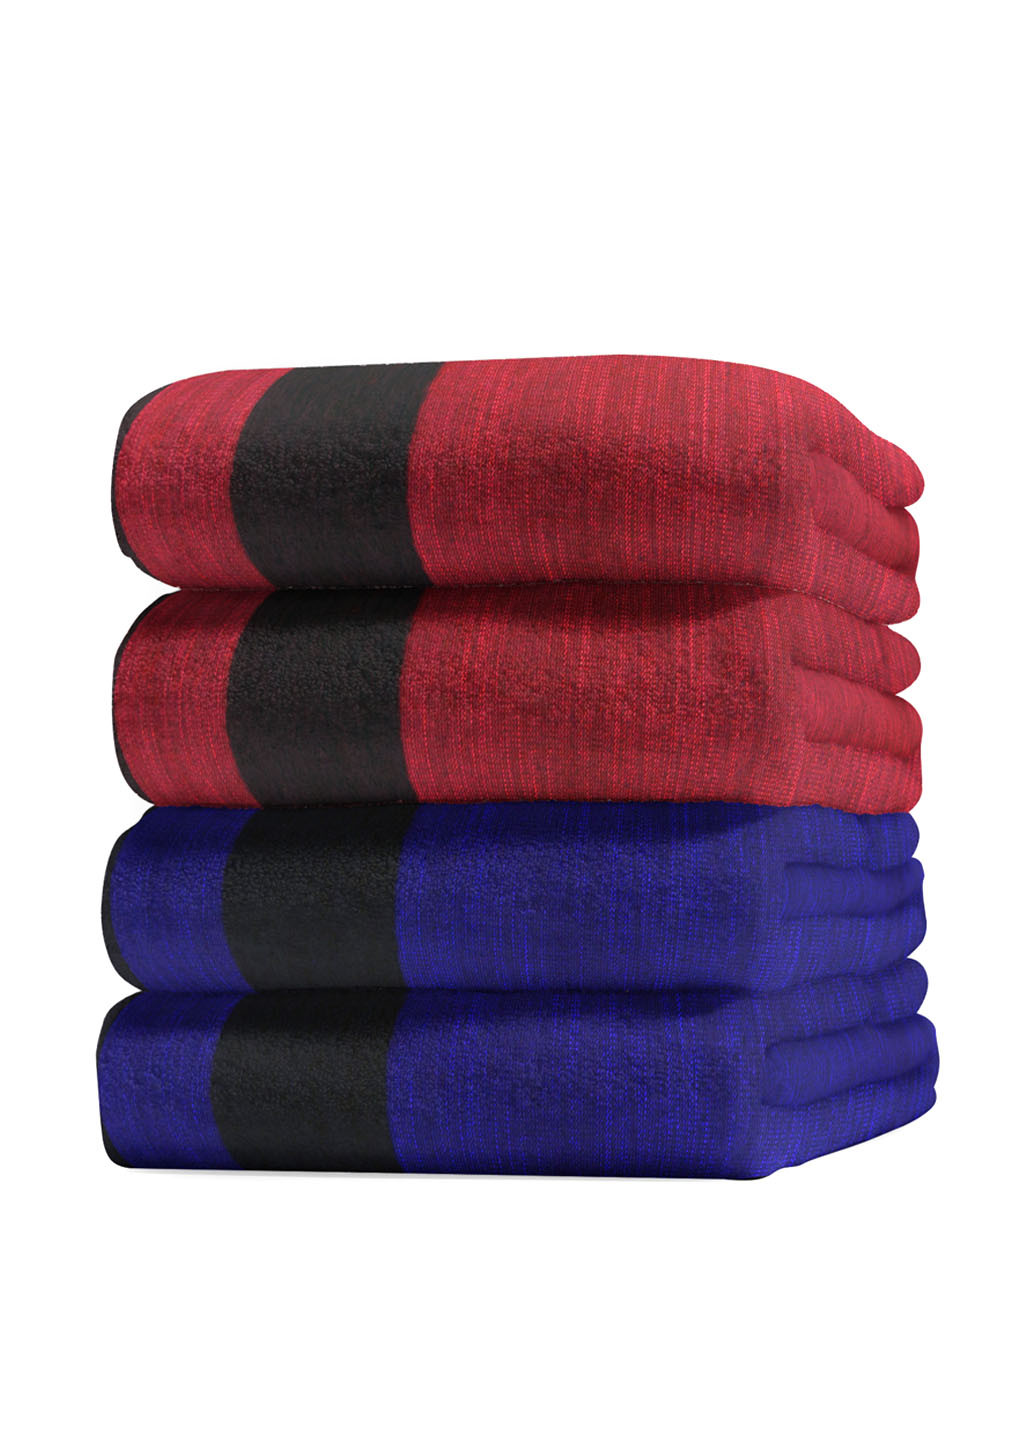 No Brand полотенце (2 шт.) однотонный бордовый производство - Турция